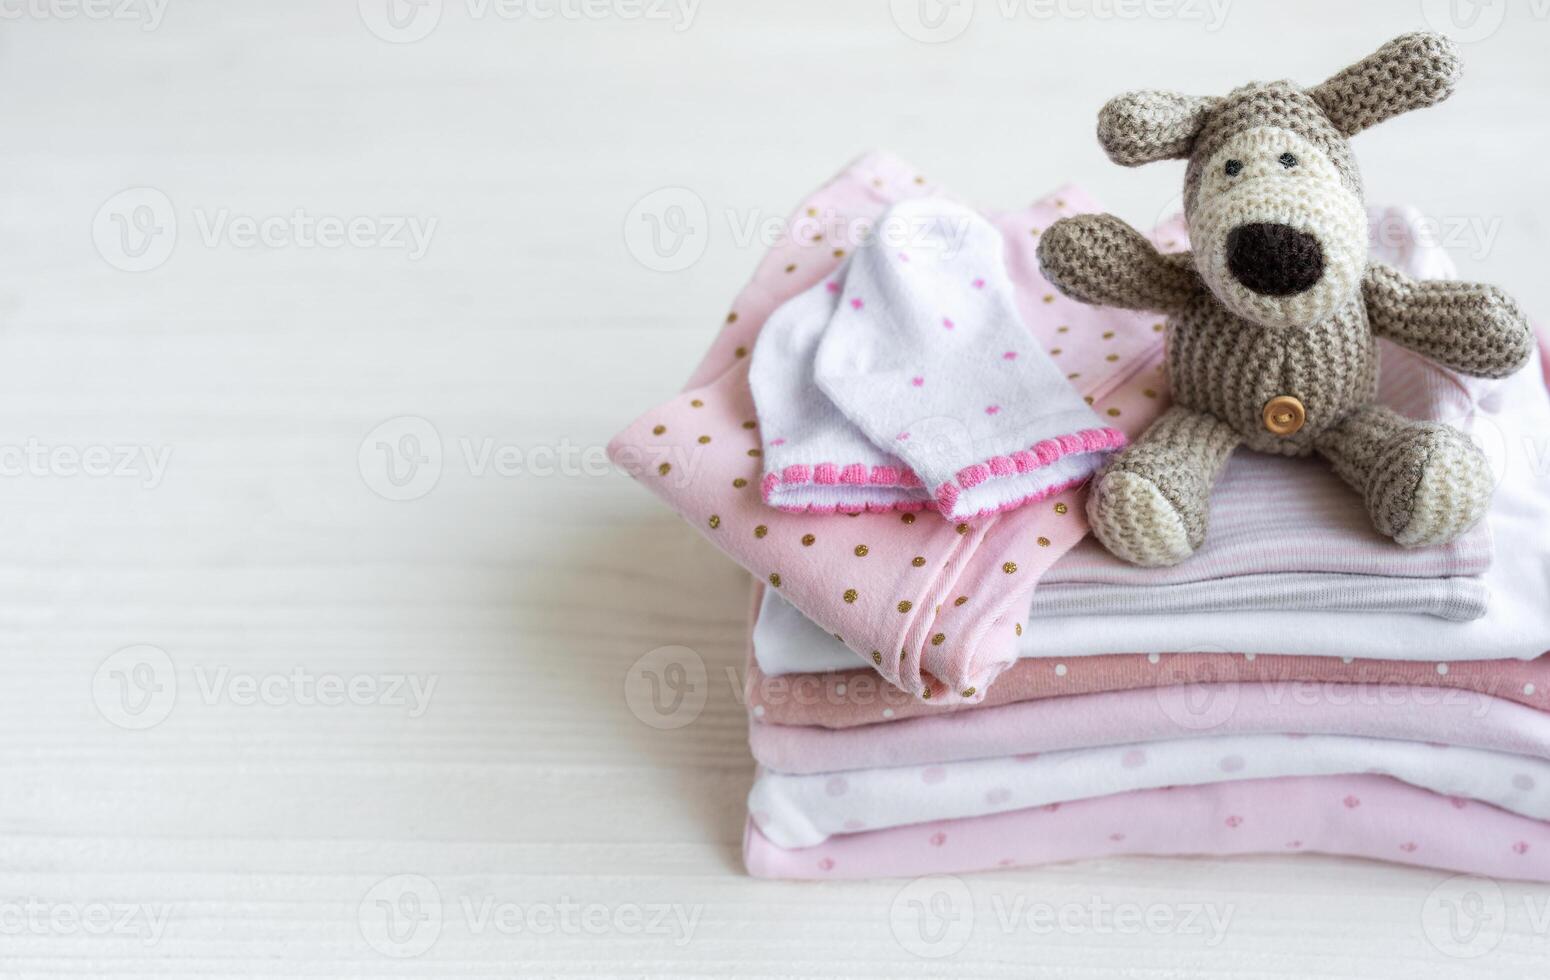 pilha do bebê roupas, meias e tricotado brinquedo foto